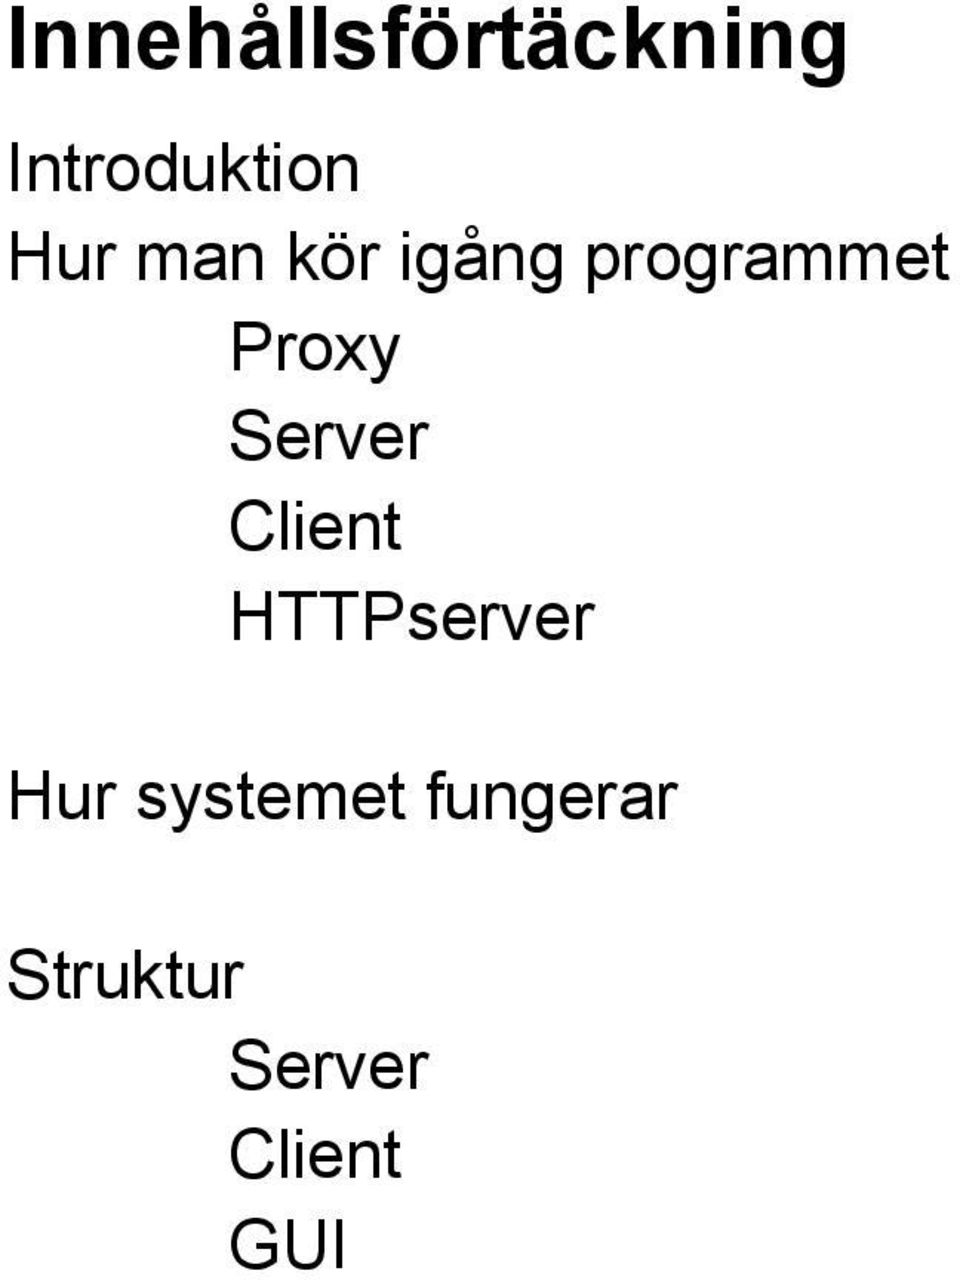 Server Client HTTPserver Hur